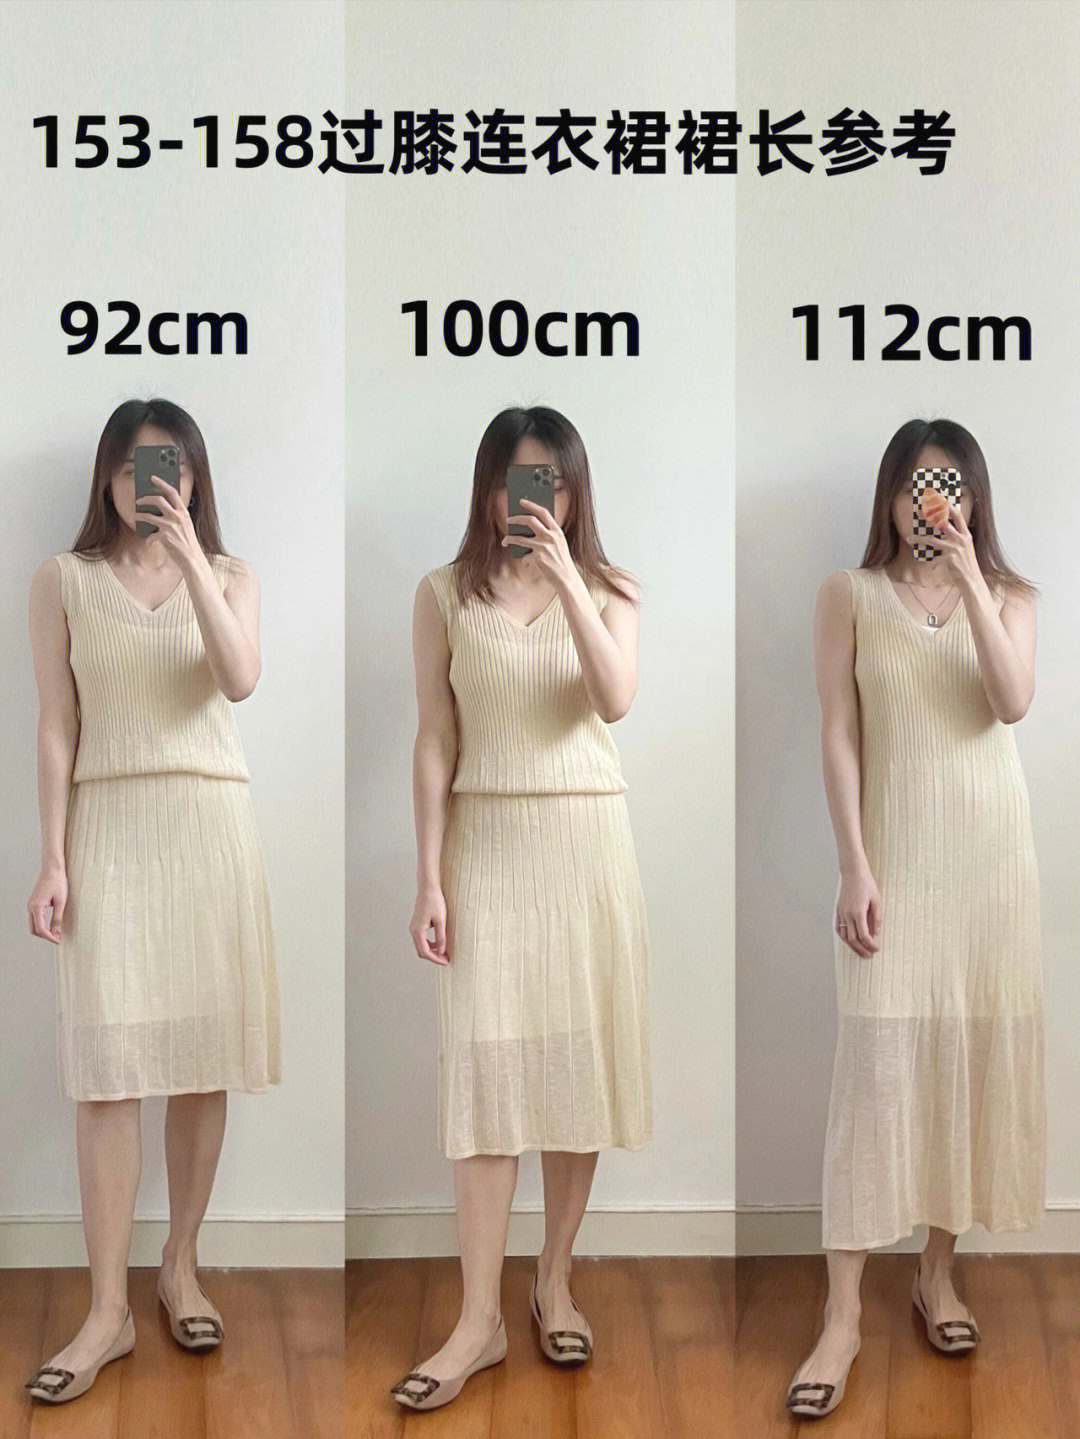 150小个子裙子长度图片